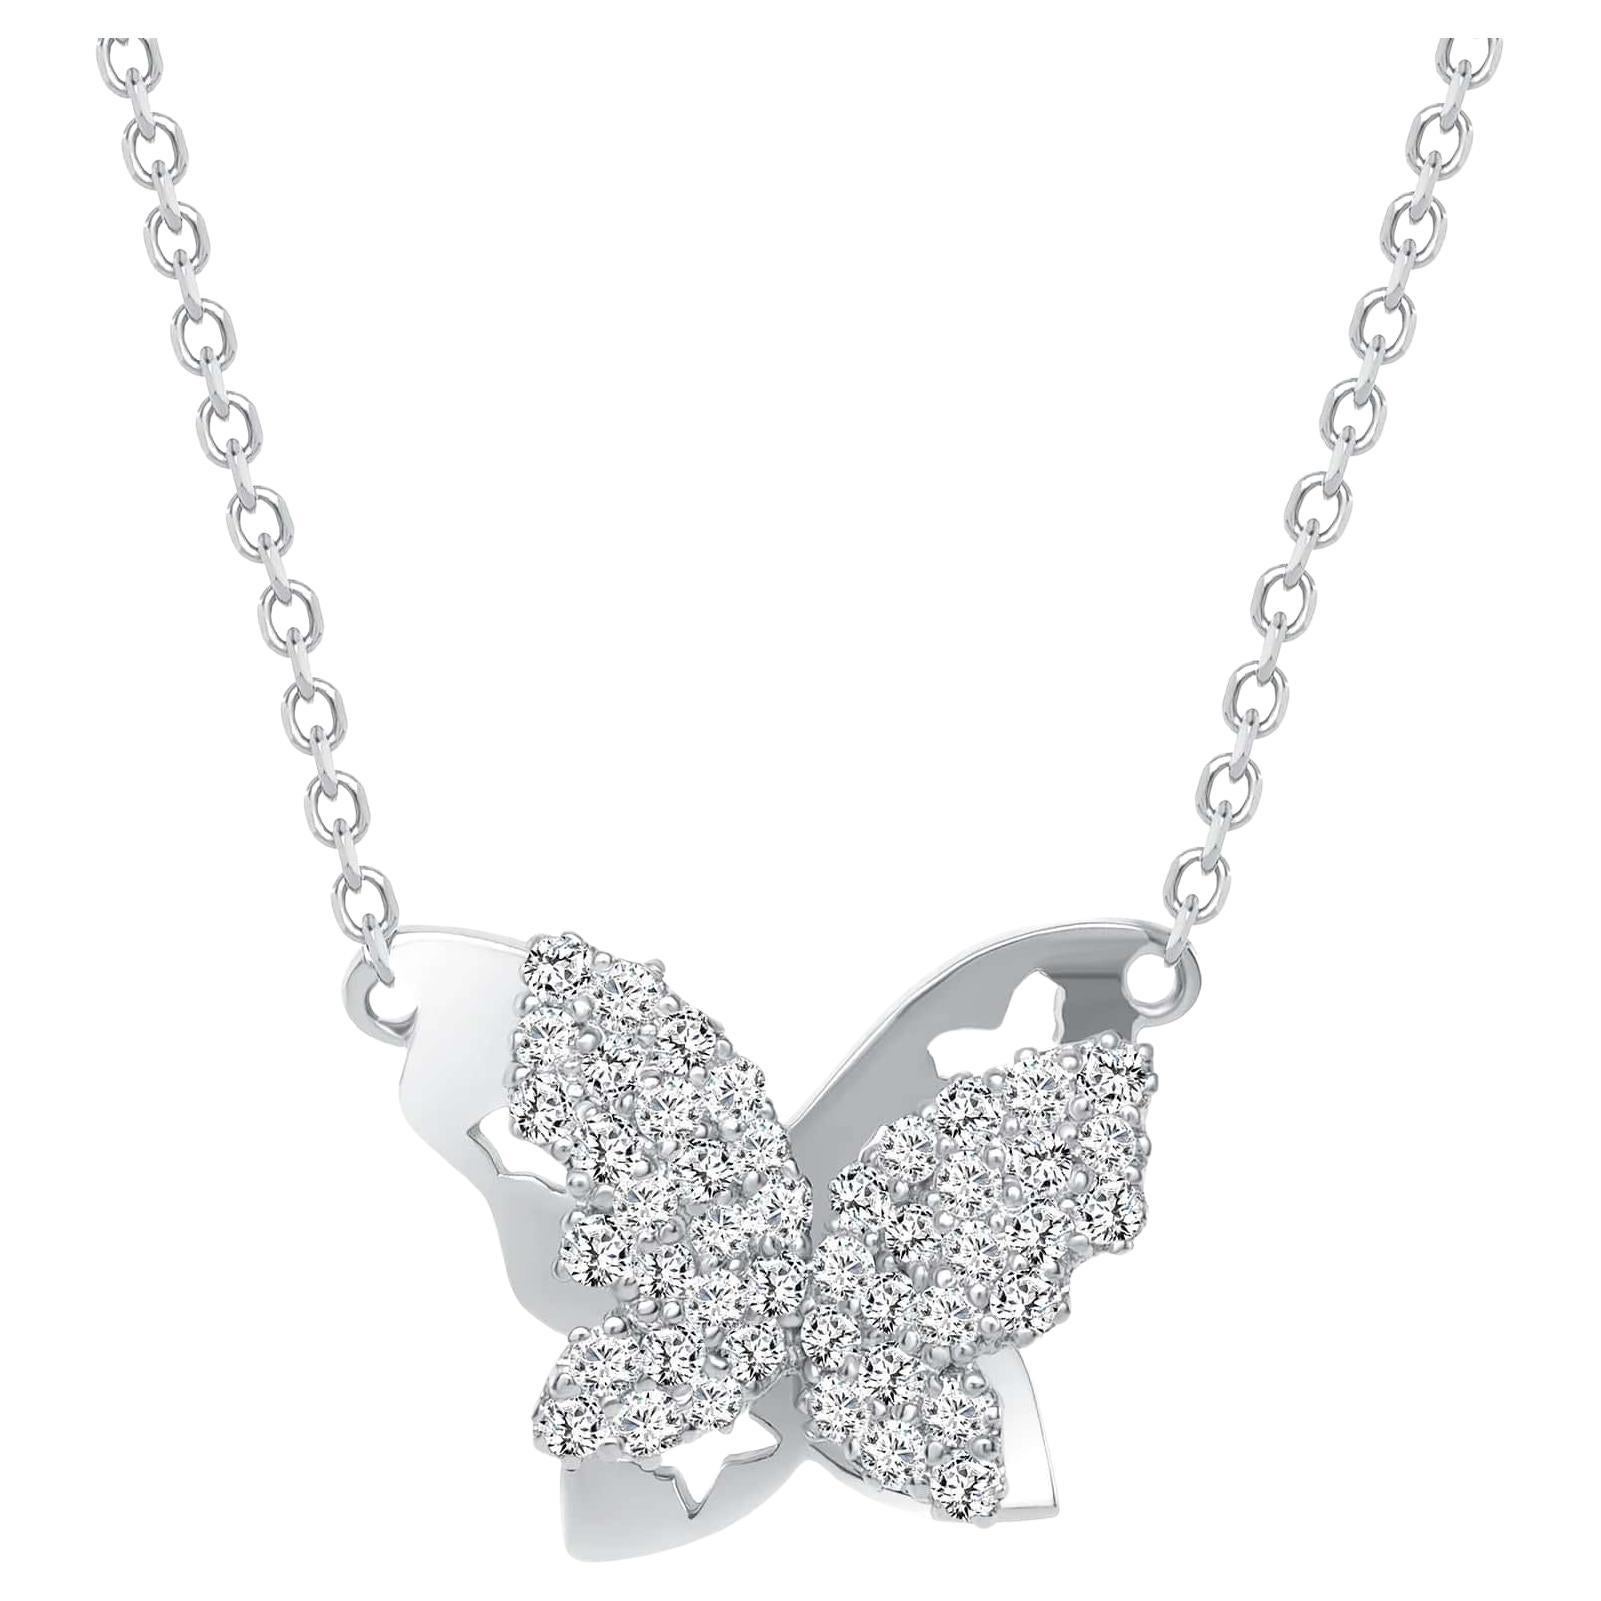 Un magnifique collier pendentif papillon éblouissant orné de petits diamants ronds naturels en sertissage pavé. Un cadeau attentionné pour un anniversaire, une remise de diplôme, la Saint-Valentin et les fêtes de fin d'année pour quelqu'un que vous